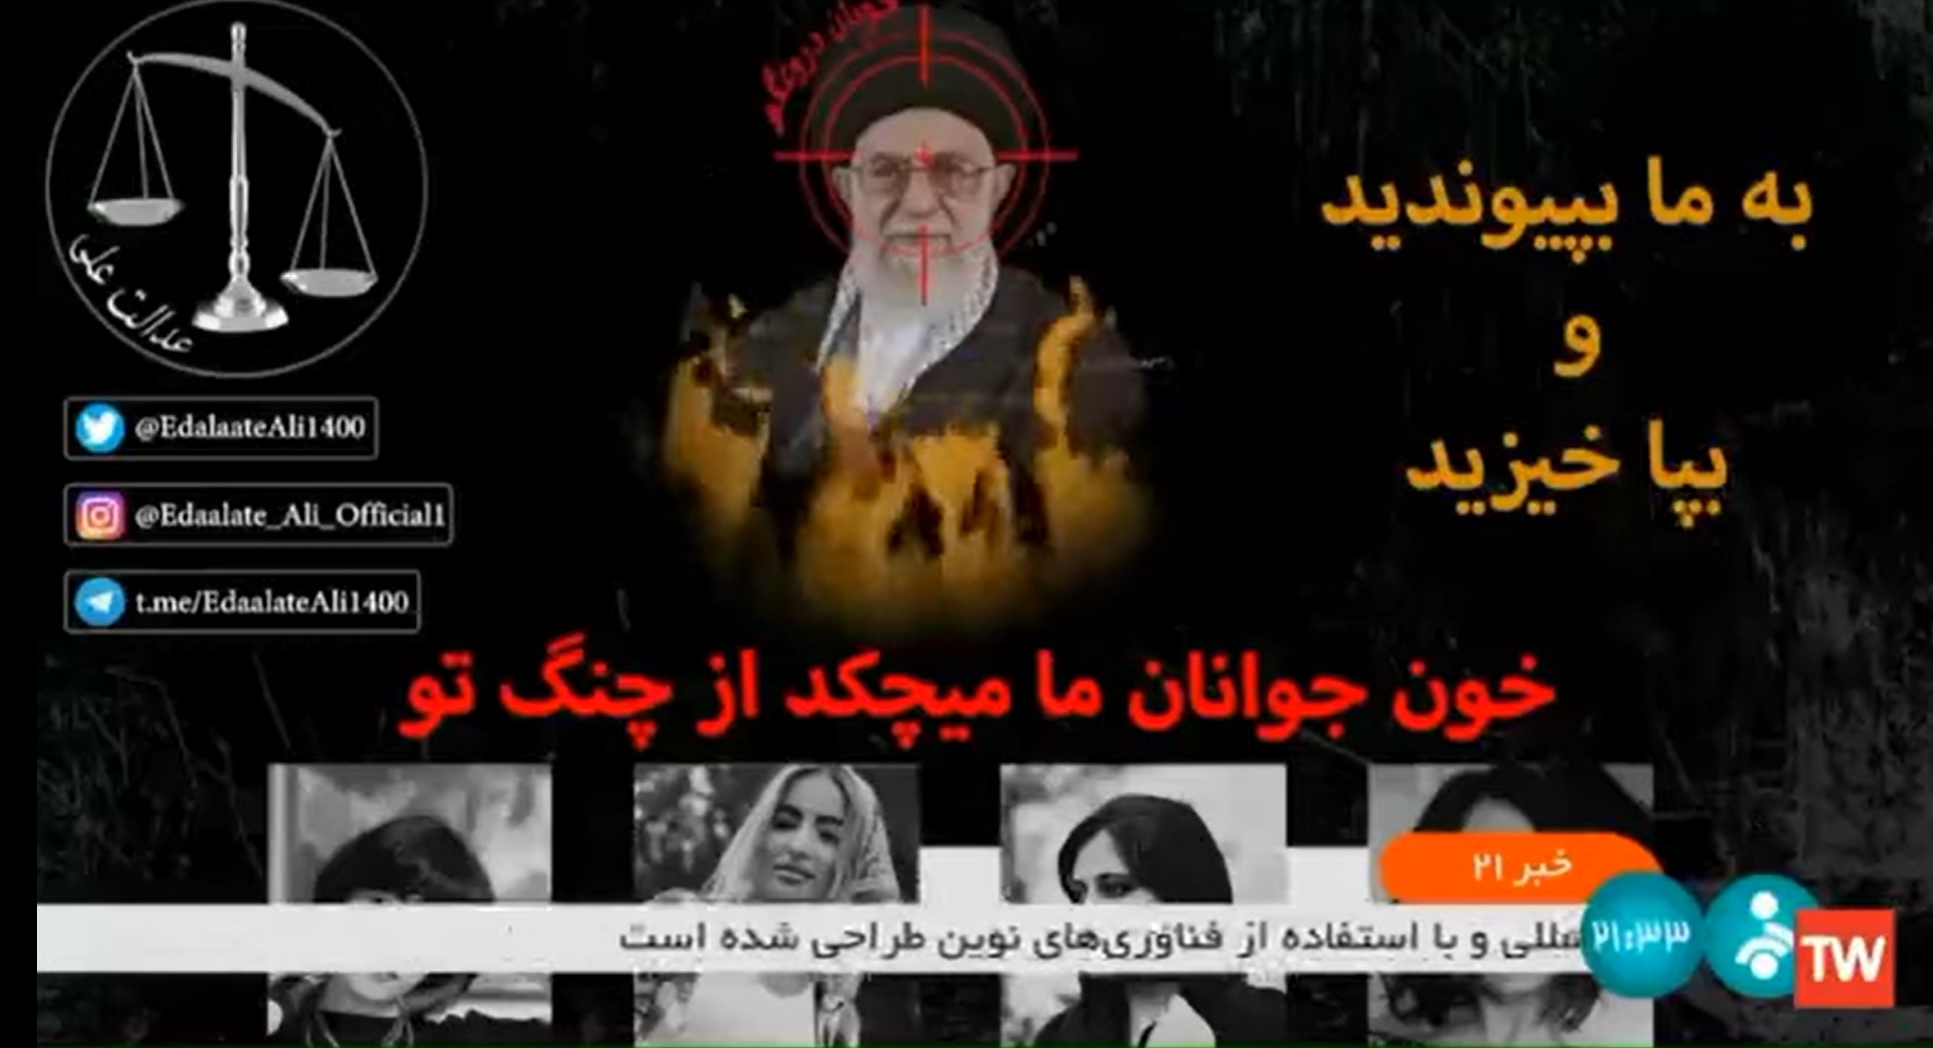 Célkereszttel a fején villant fel az égő ajatollah az iráni tévé adásában